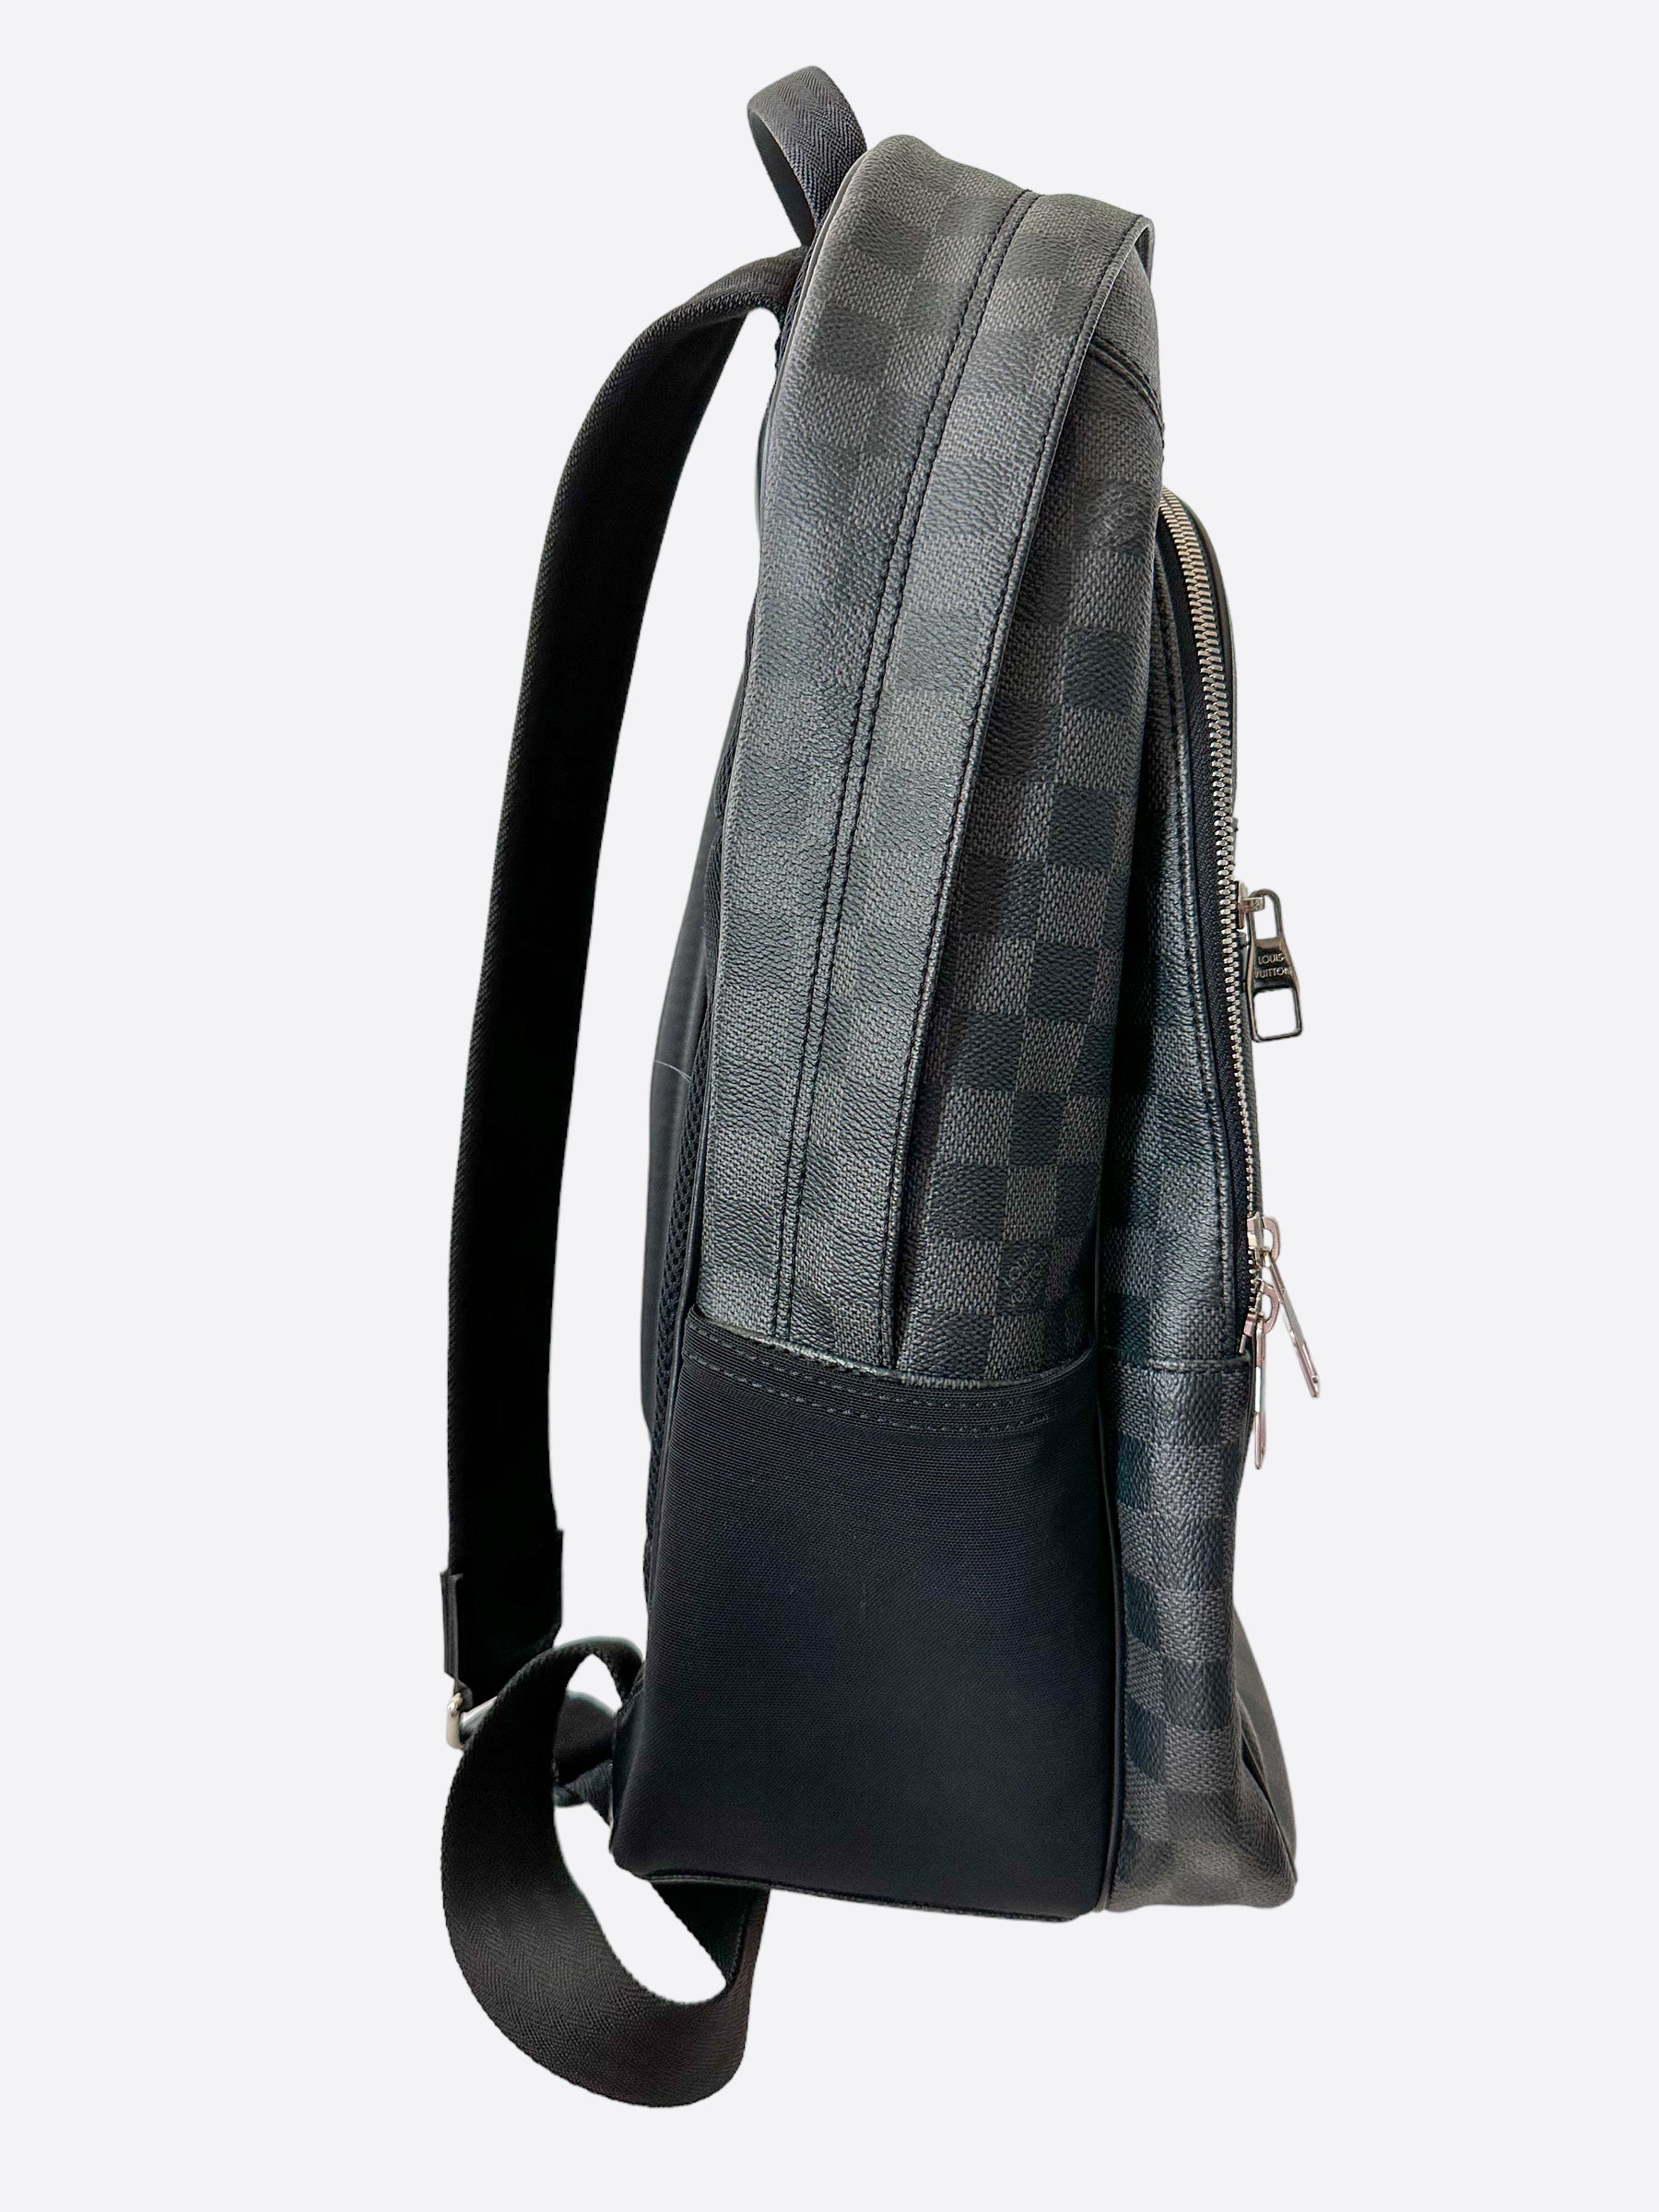 lv white backpack